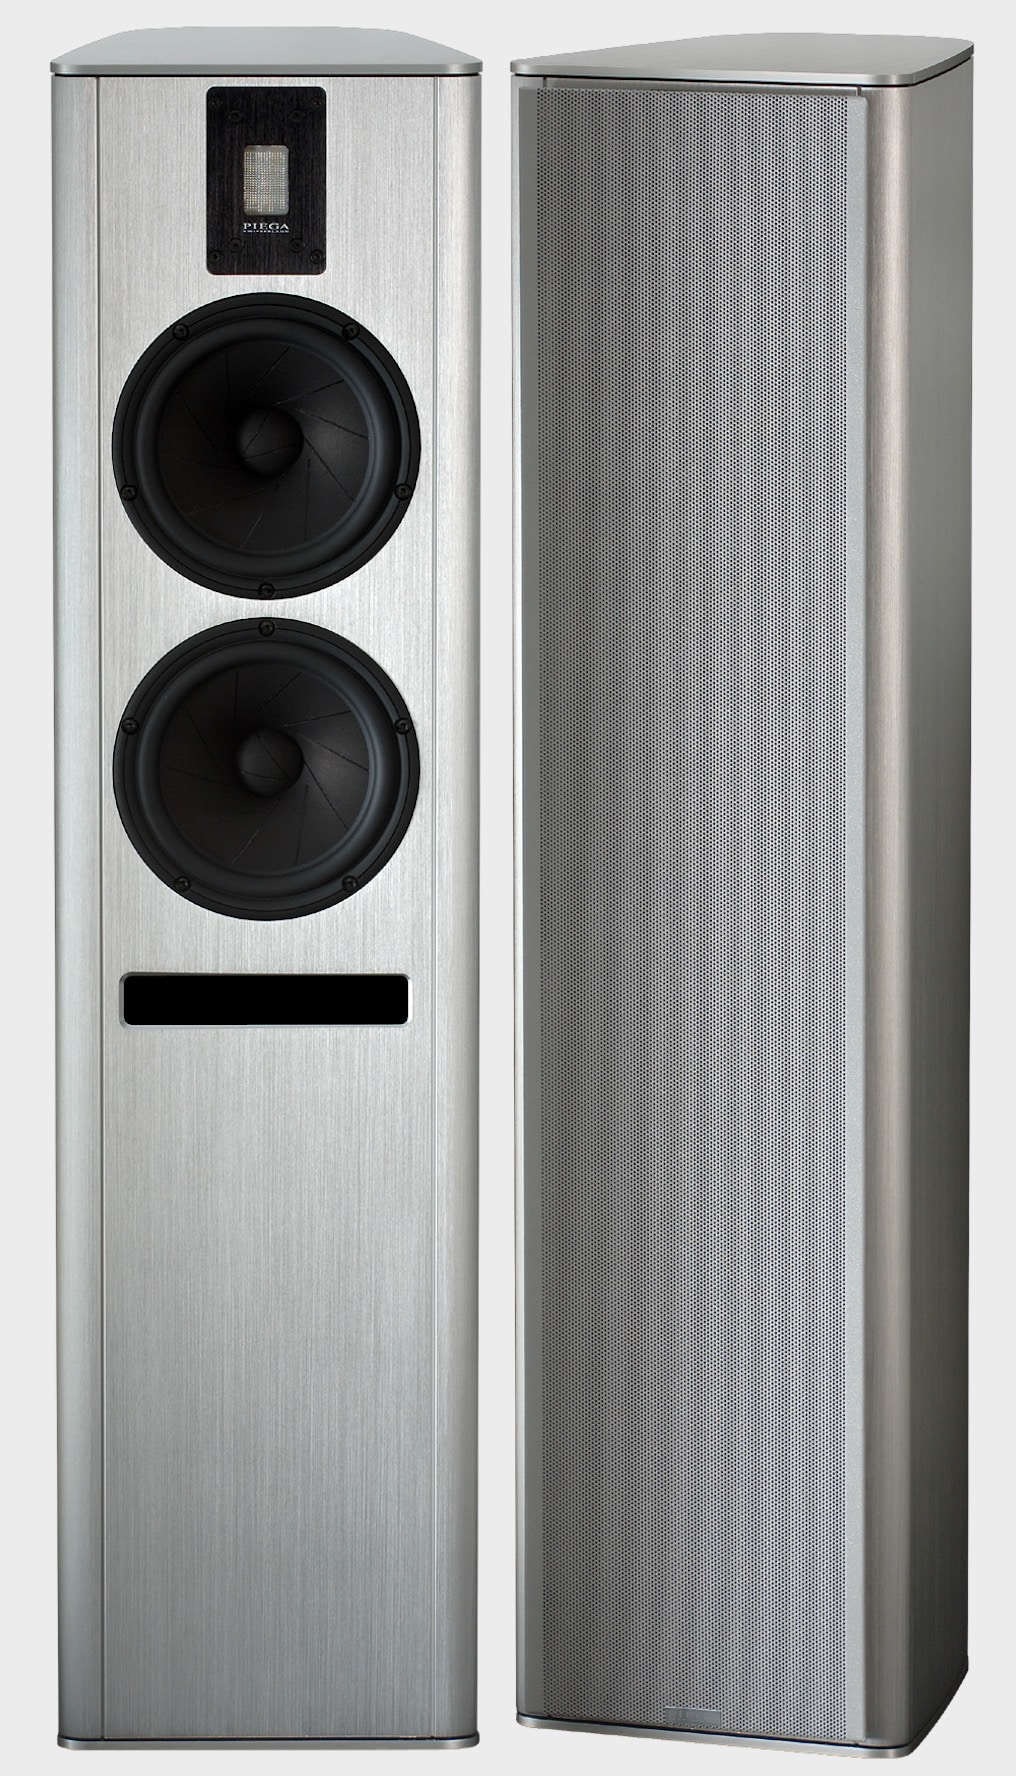 Premium Series Speakers from PIEGA